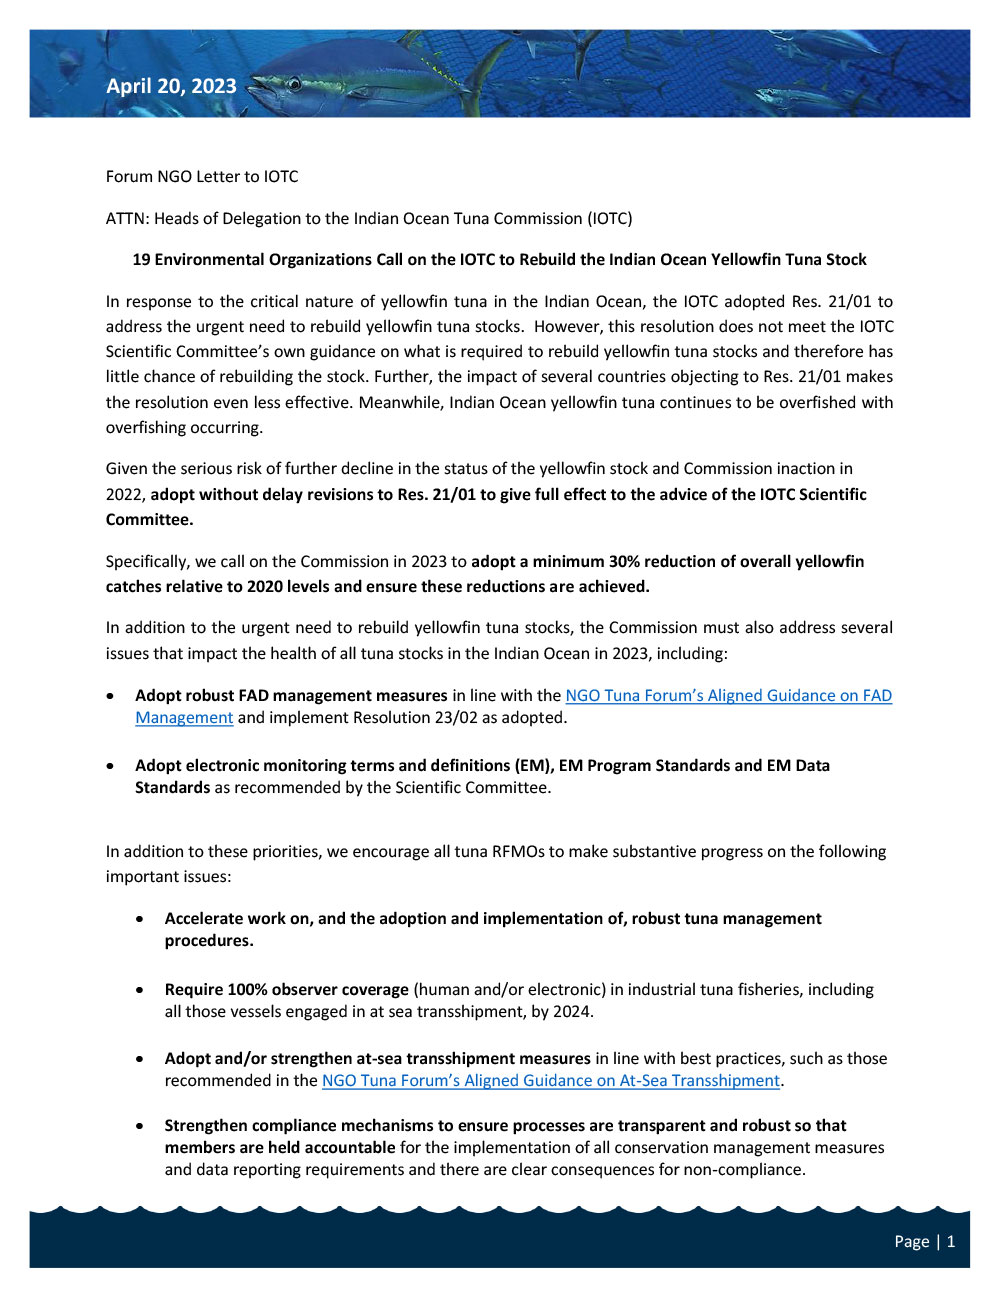 IOTC NGO Advocacy Letter 2023